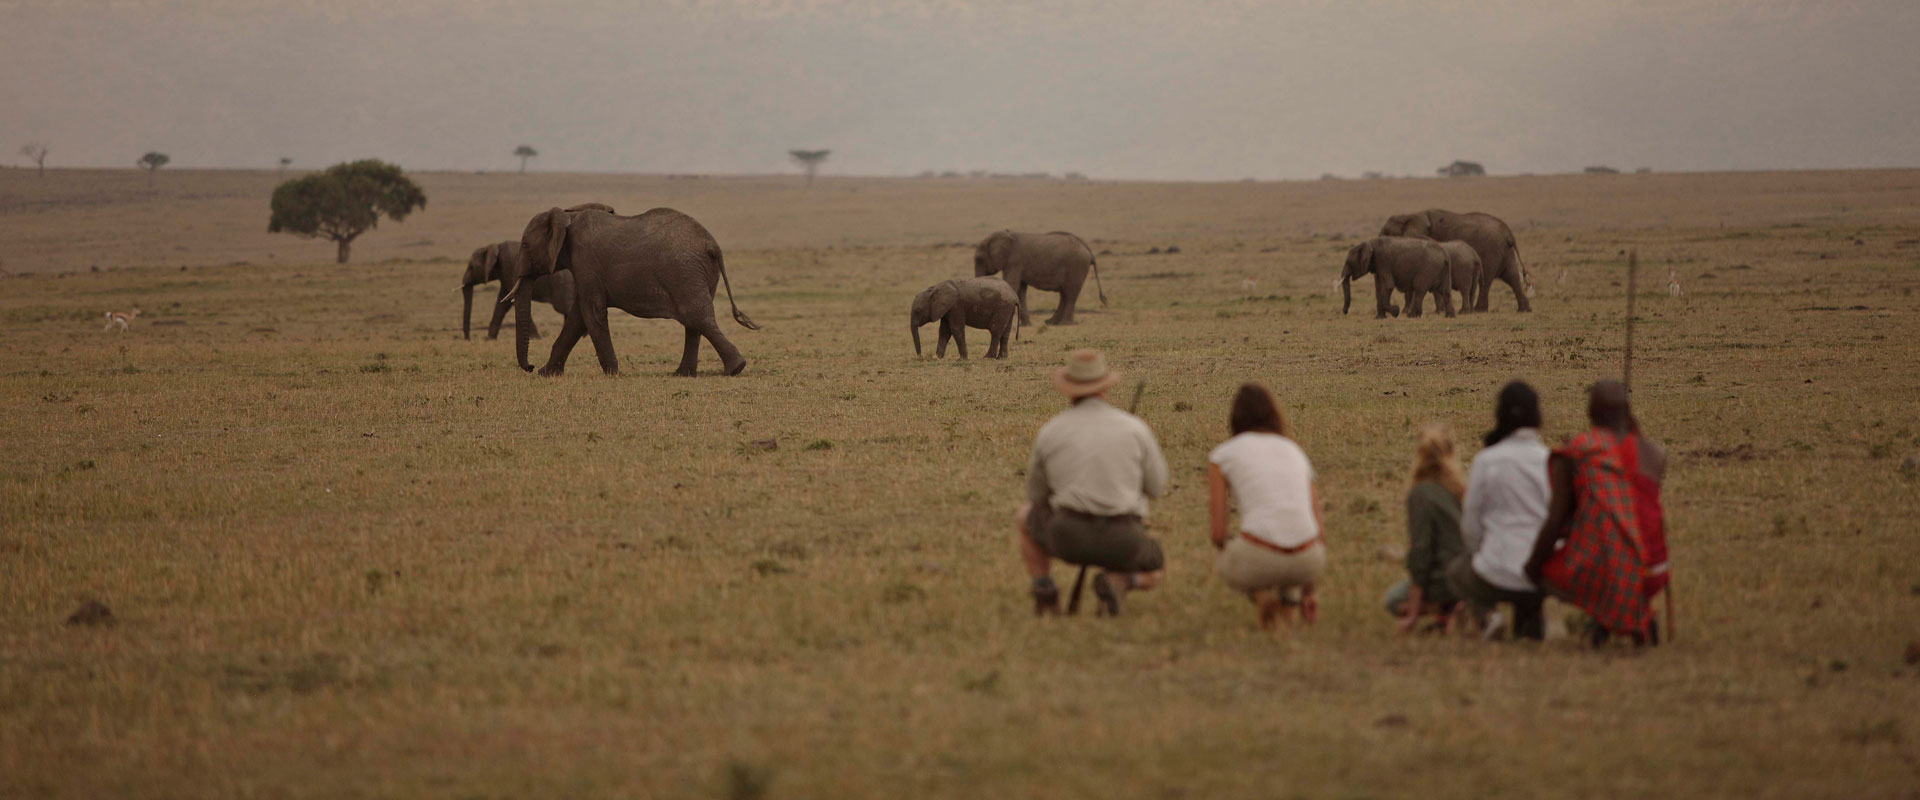 Kenya Safari Itineraries